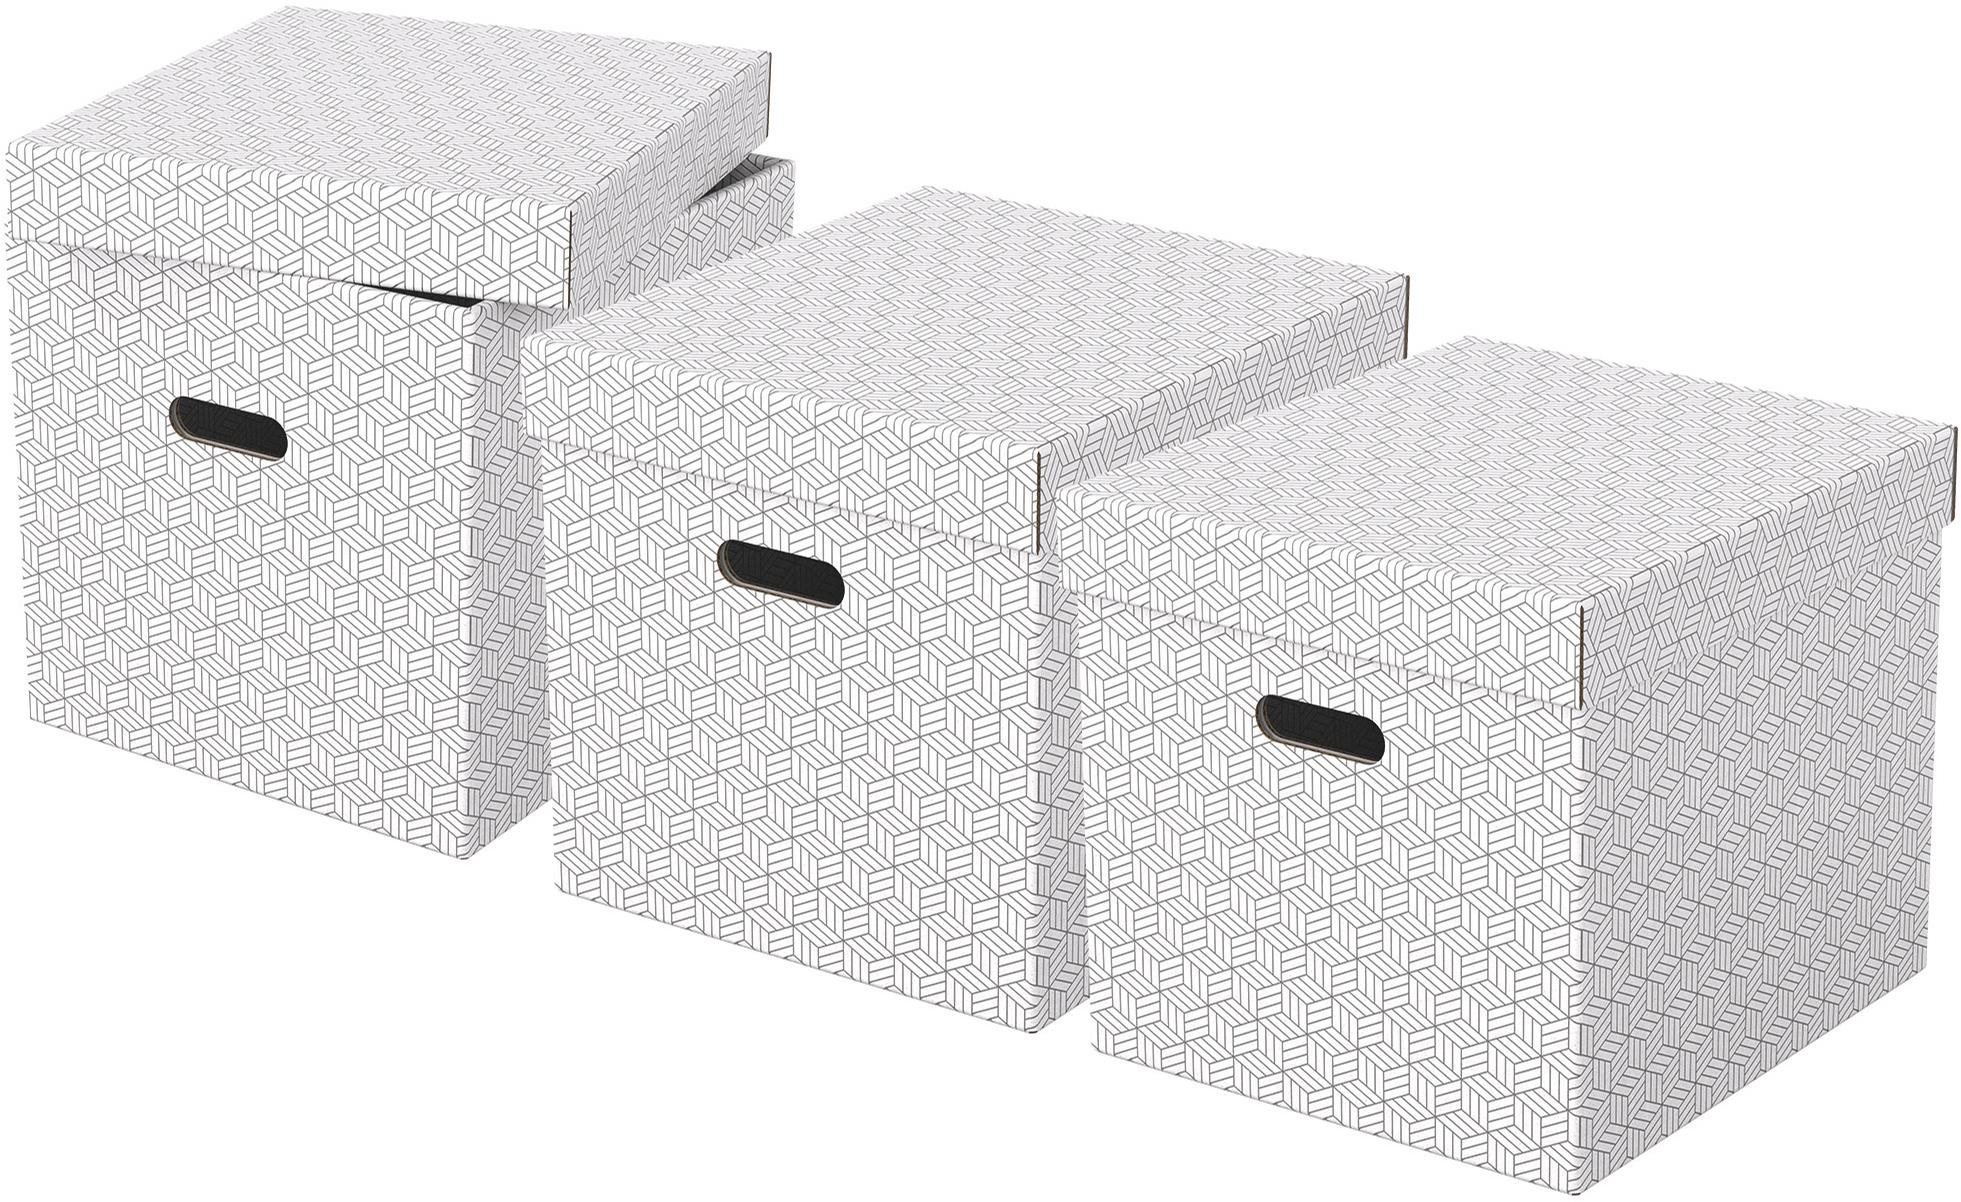 Archiváló doboz ESSELTE Home kocka alakú 32 x 31.5 x 36.5 cm